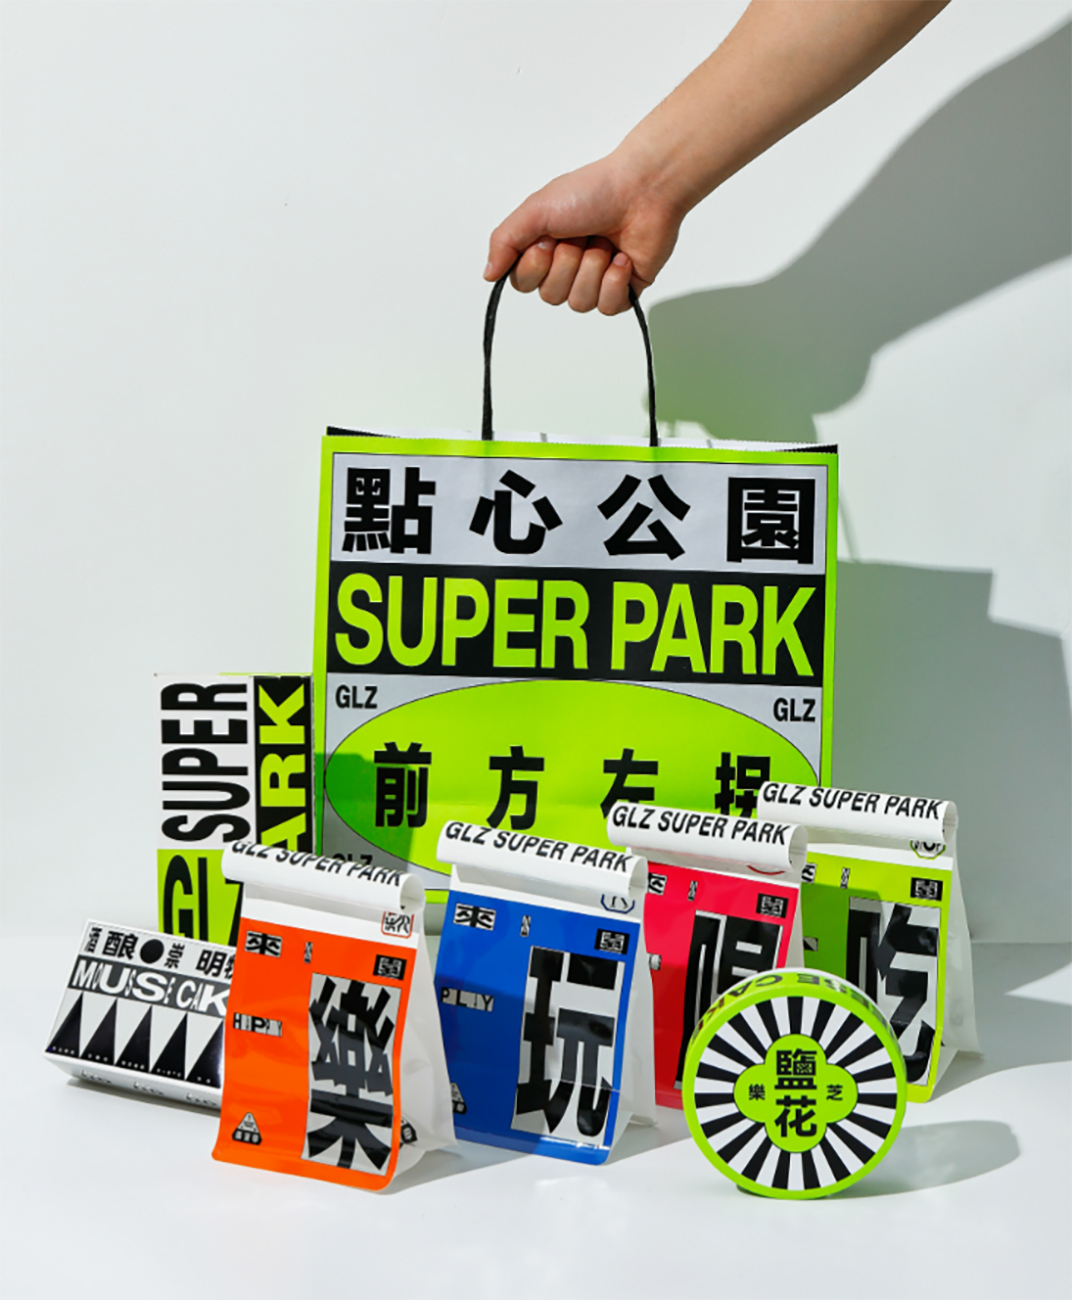 广莲申 点心公园 GRAND LIZ SUPER PARK 上海 珠海 成都 武汉 杭州 广州 香港 澳门 logo设计 vi设计 空间设计